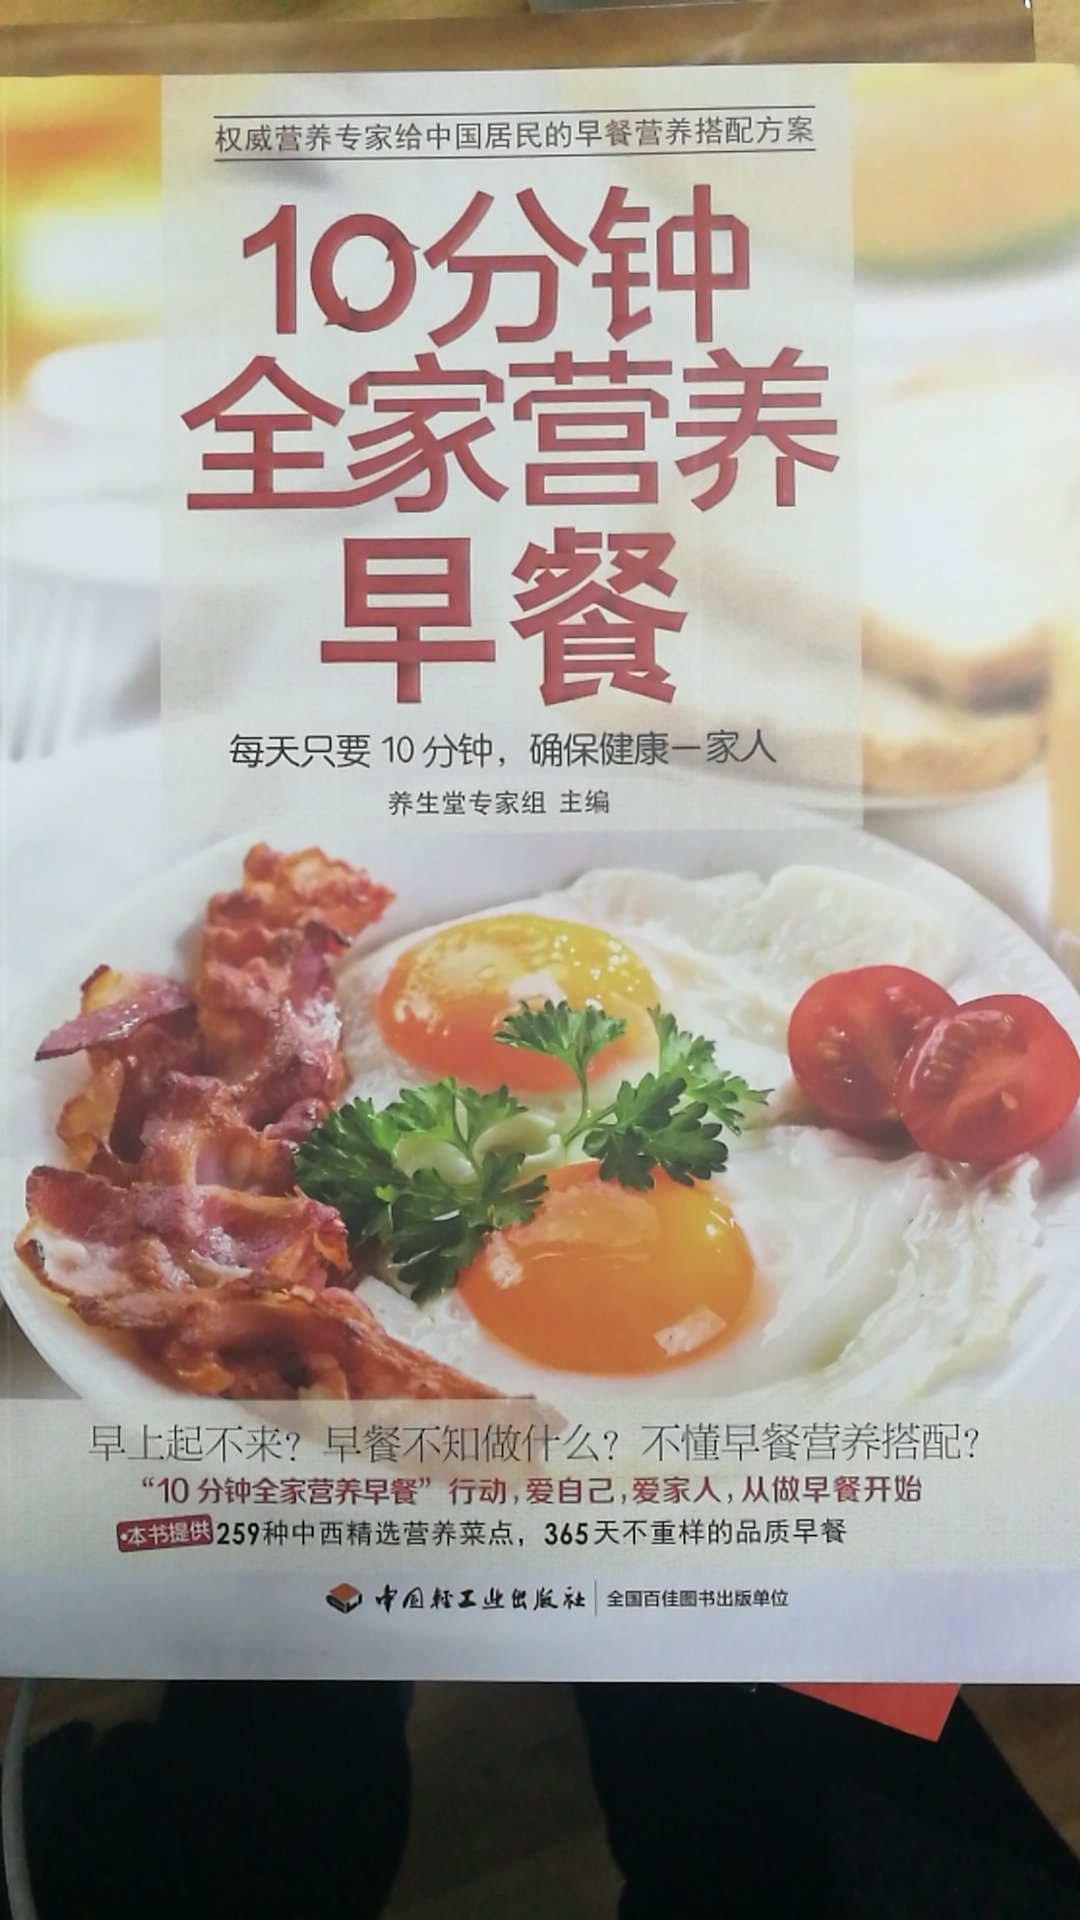 还没有看，希望通过这本书能做好家里的早餐。